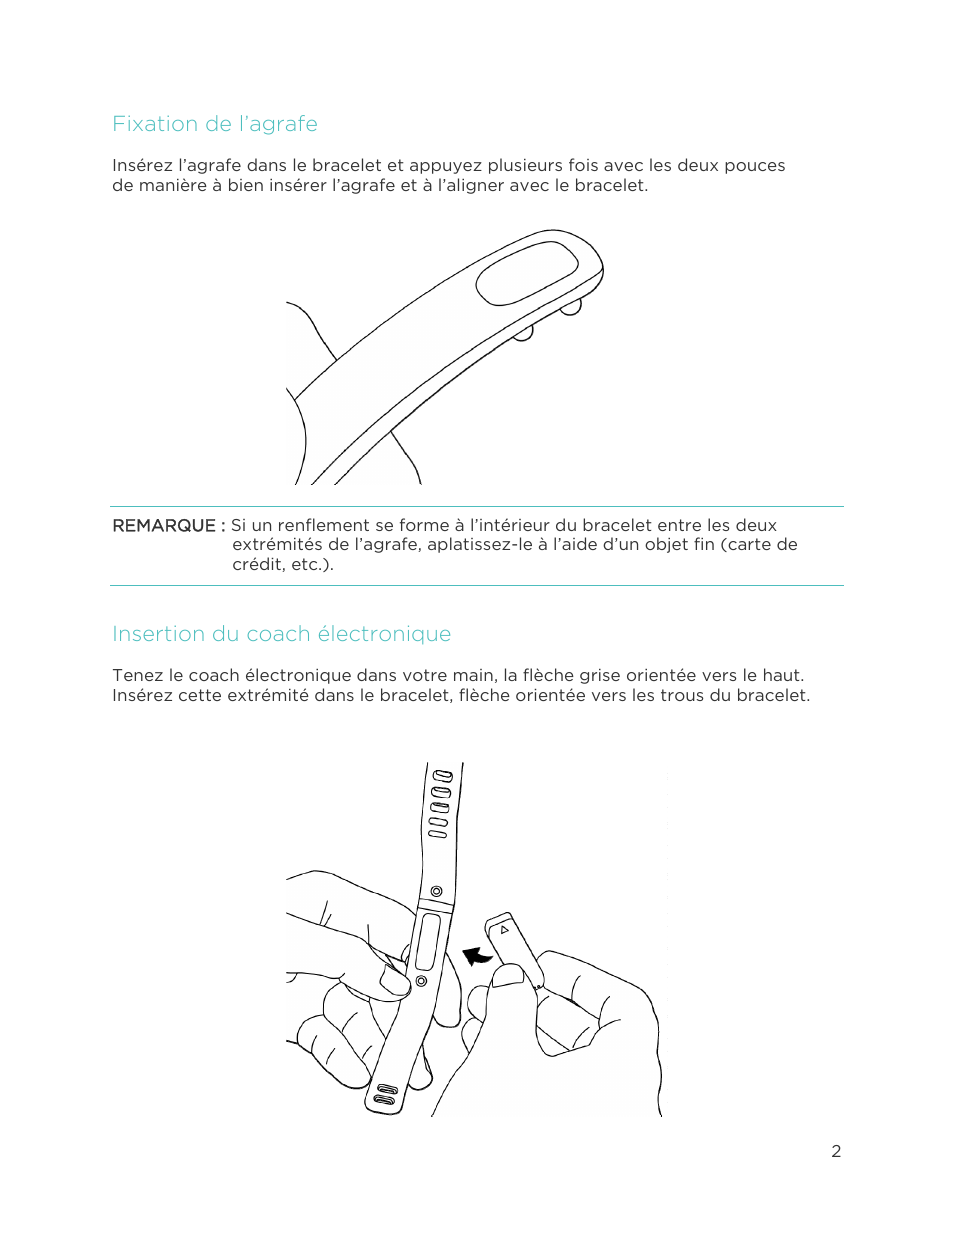 Fixation de l’agrafe, Insertion du coach électronique | Fitbit Flex Manuel d'utilisation | Page 7 / 40